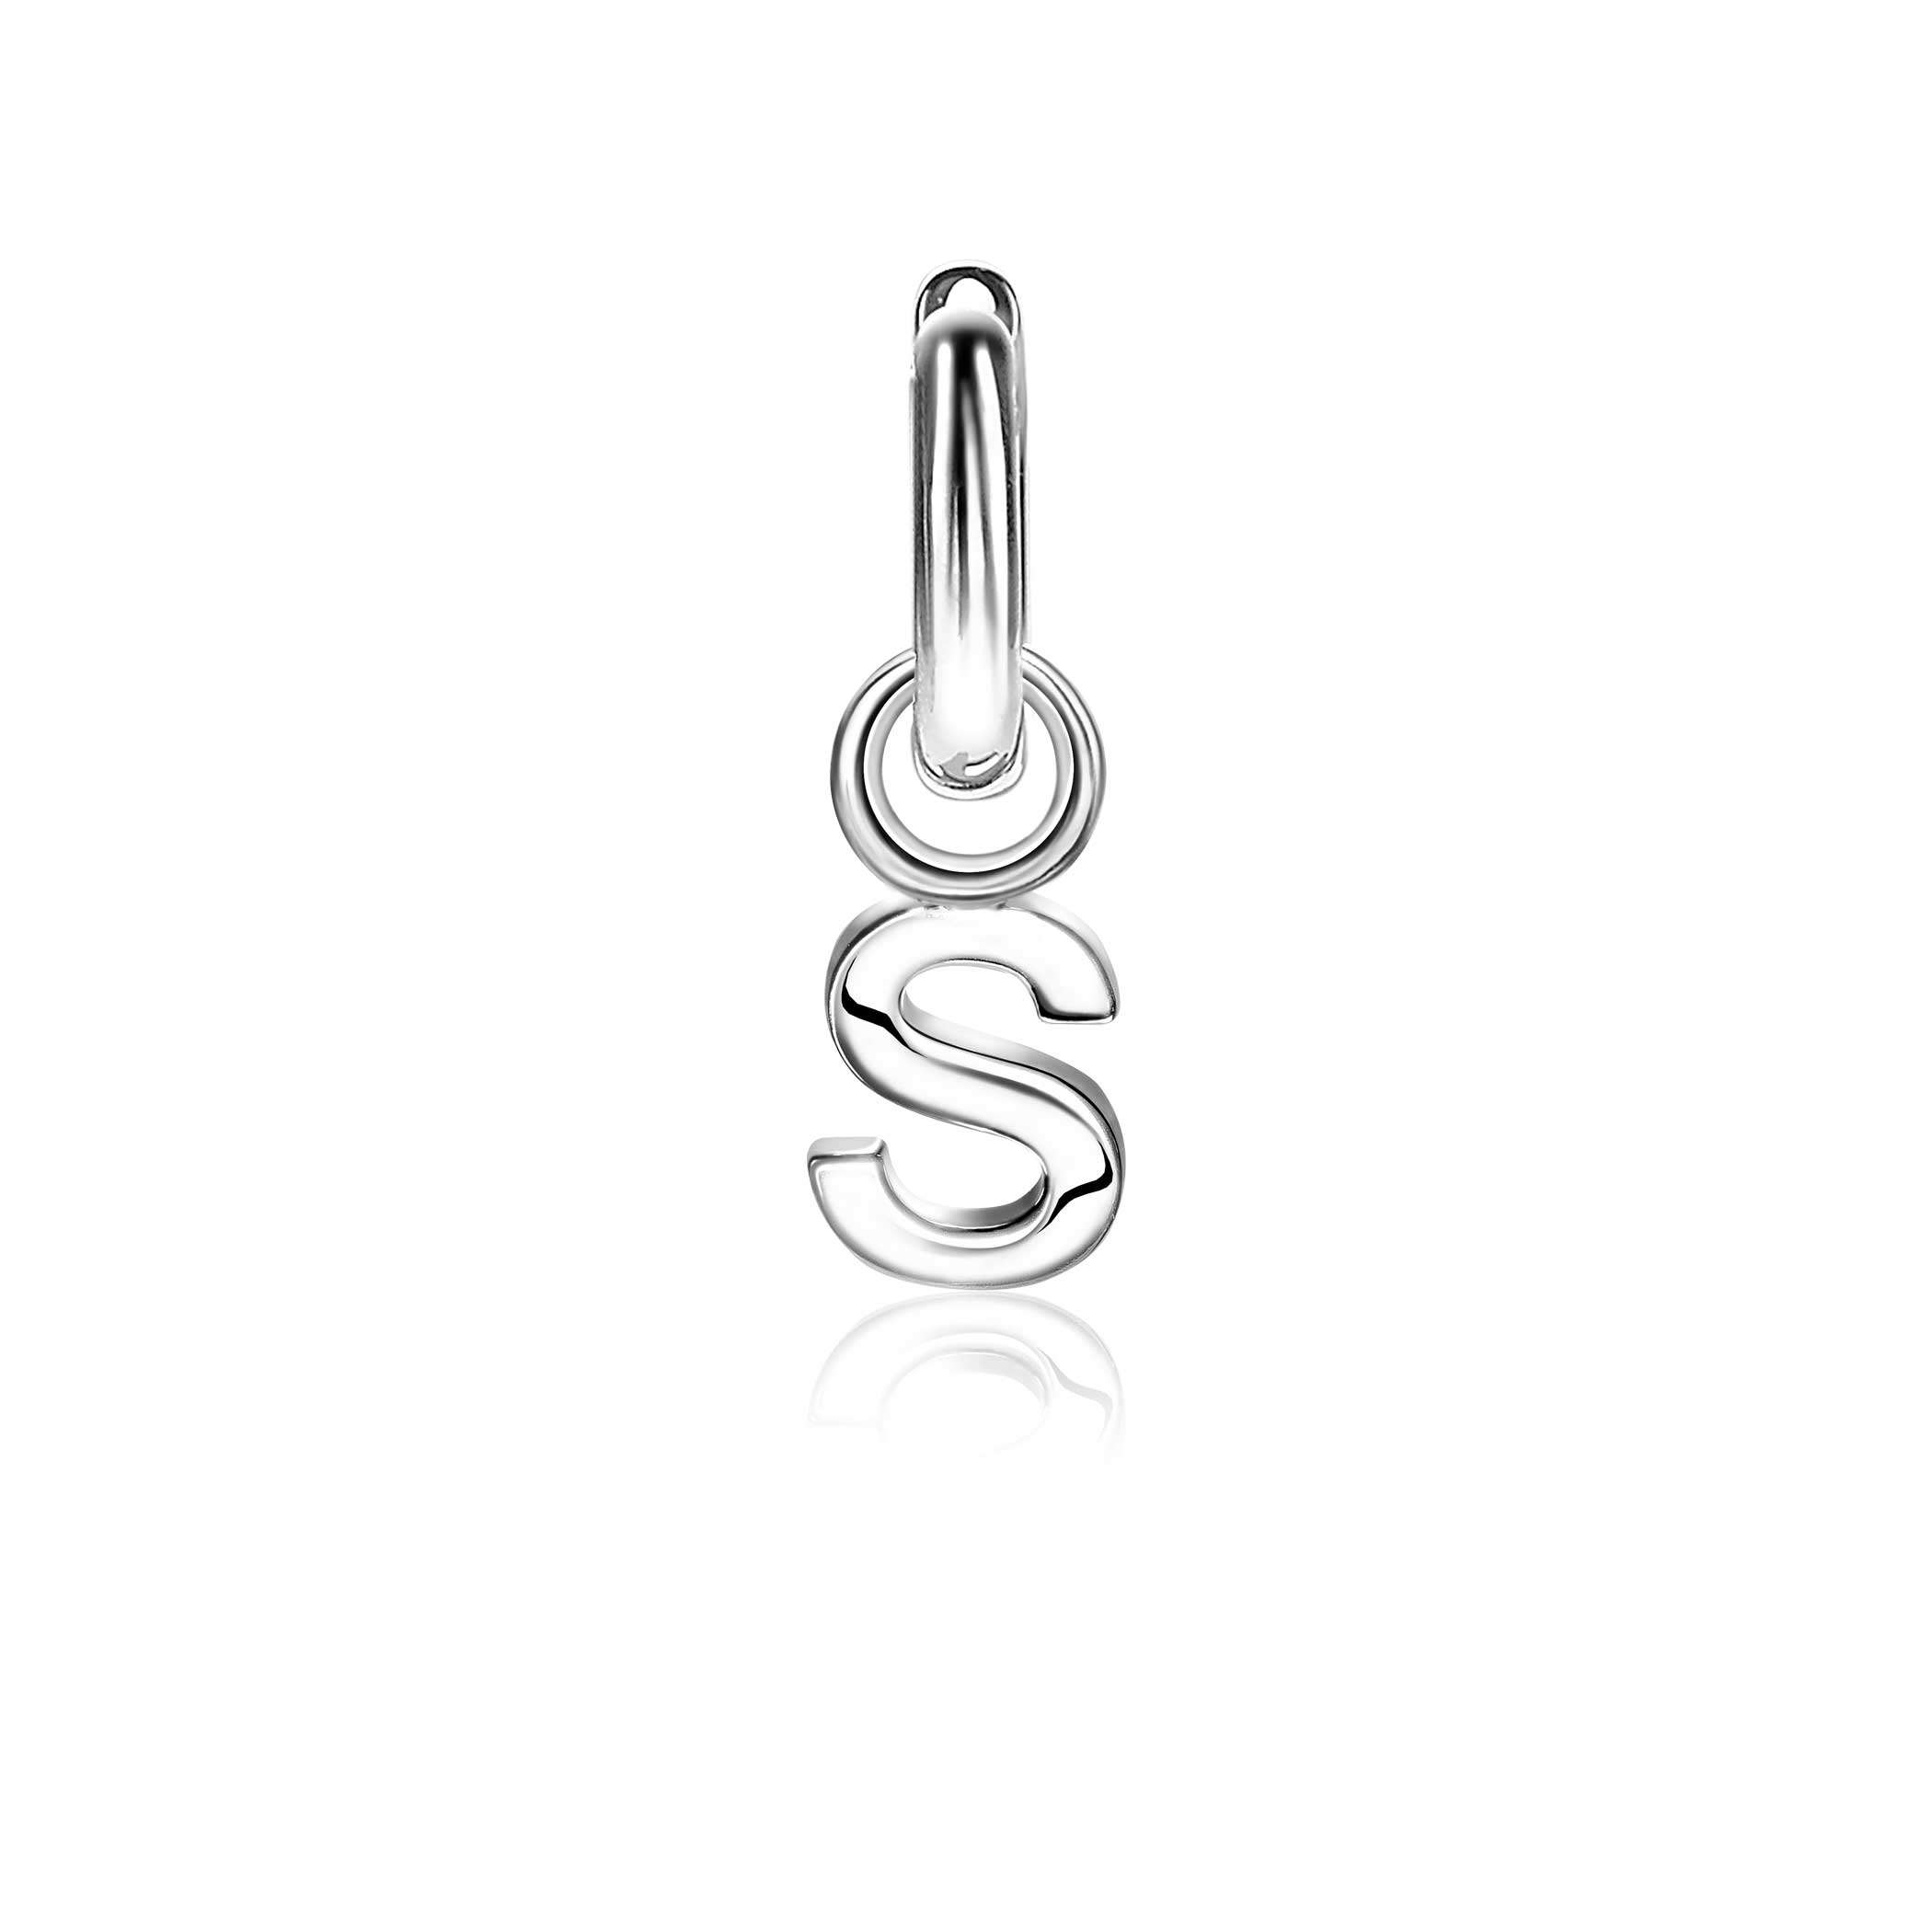 ZINZI Sterling Silver Letter Earrings Pendant S price per piece ZICH2144S (excl. hoop earrings)